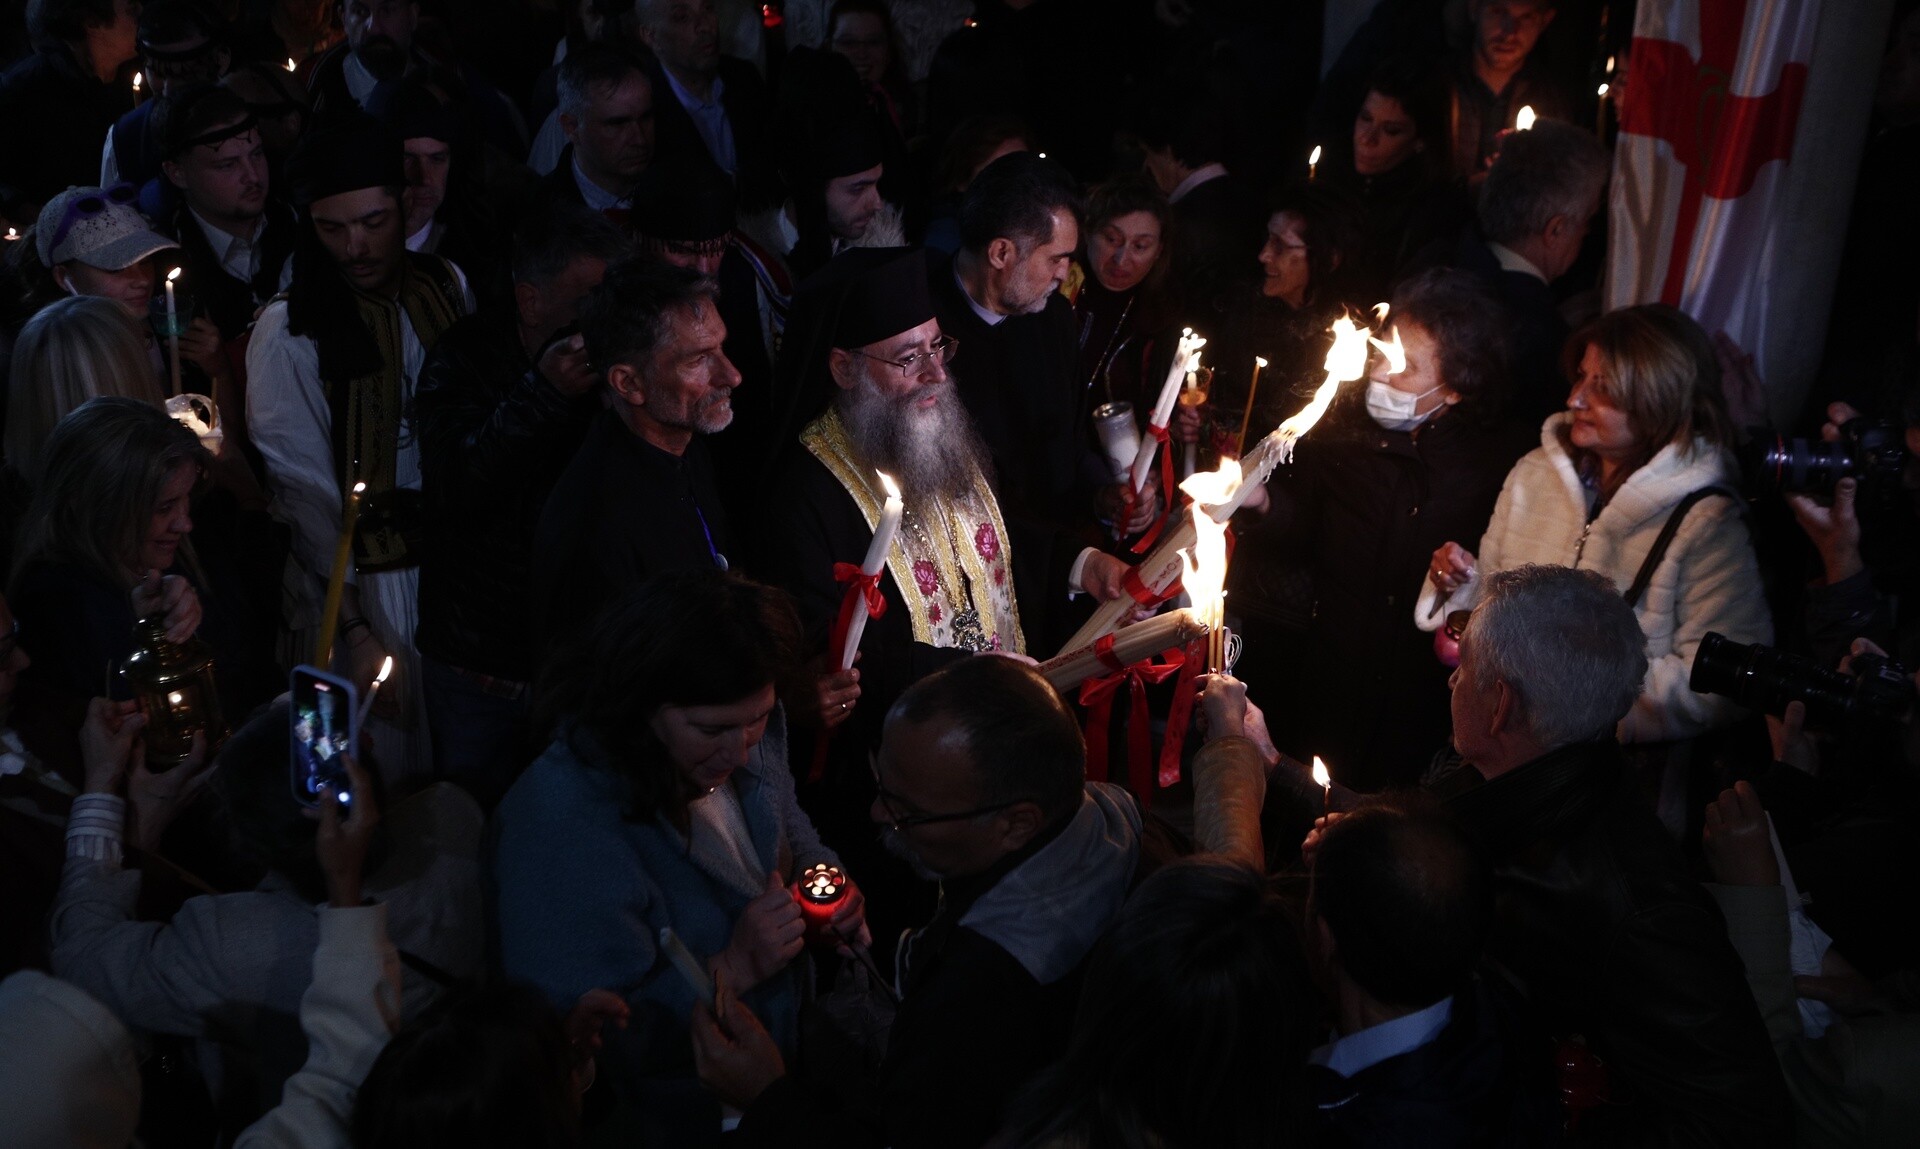 Το Άγιο Φως έφτασε στο Μετόχι του Πανάγιου Τάφου - Μεταφέρεται σε όλη την Ελλάδα